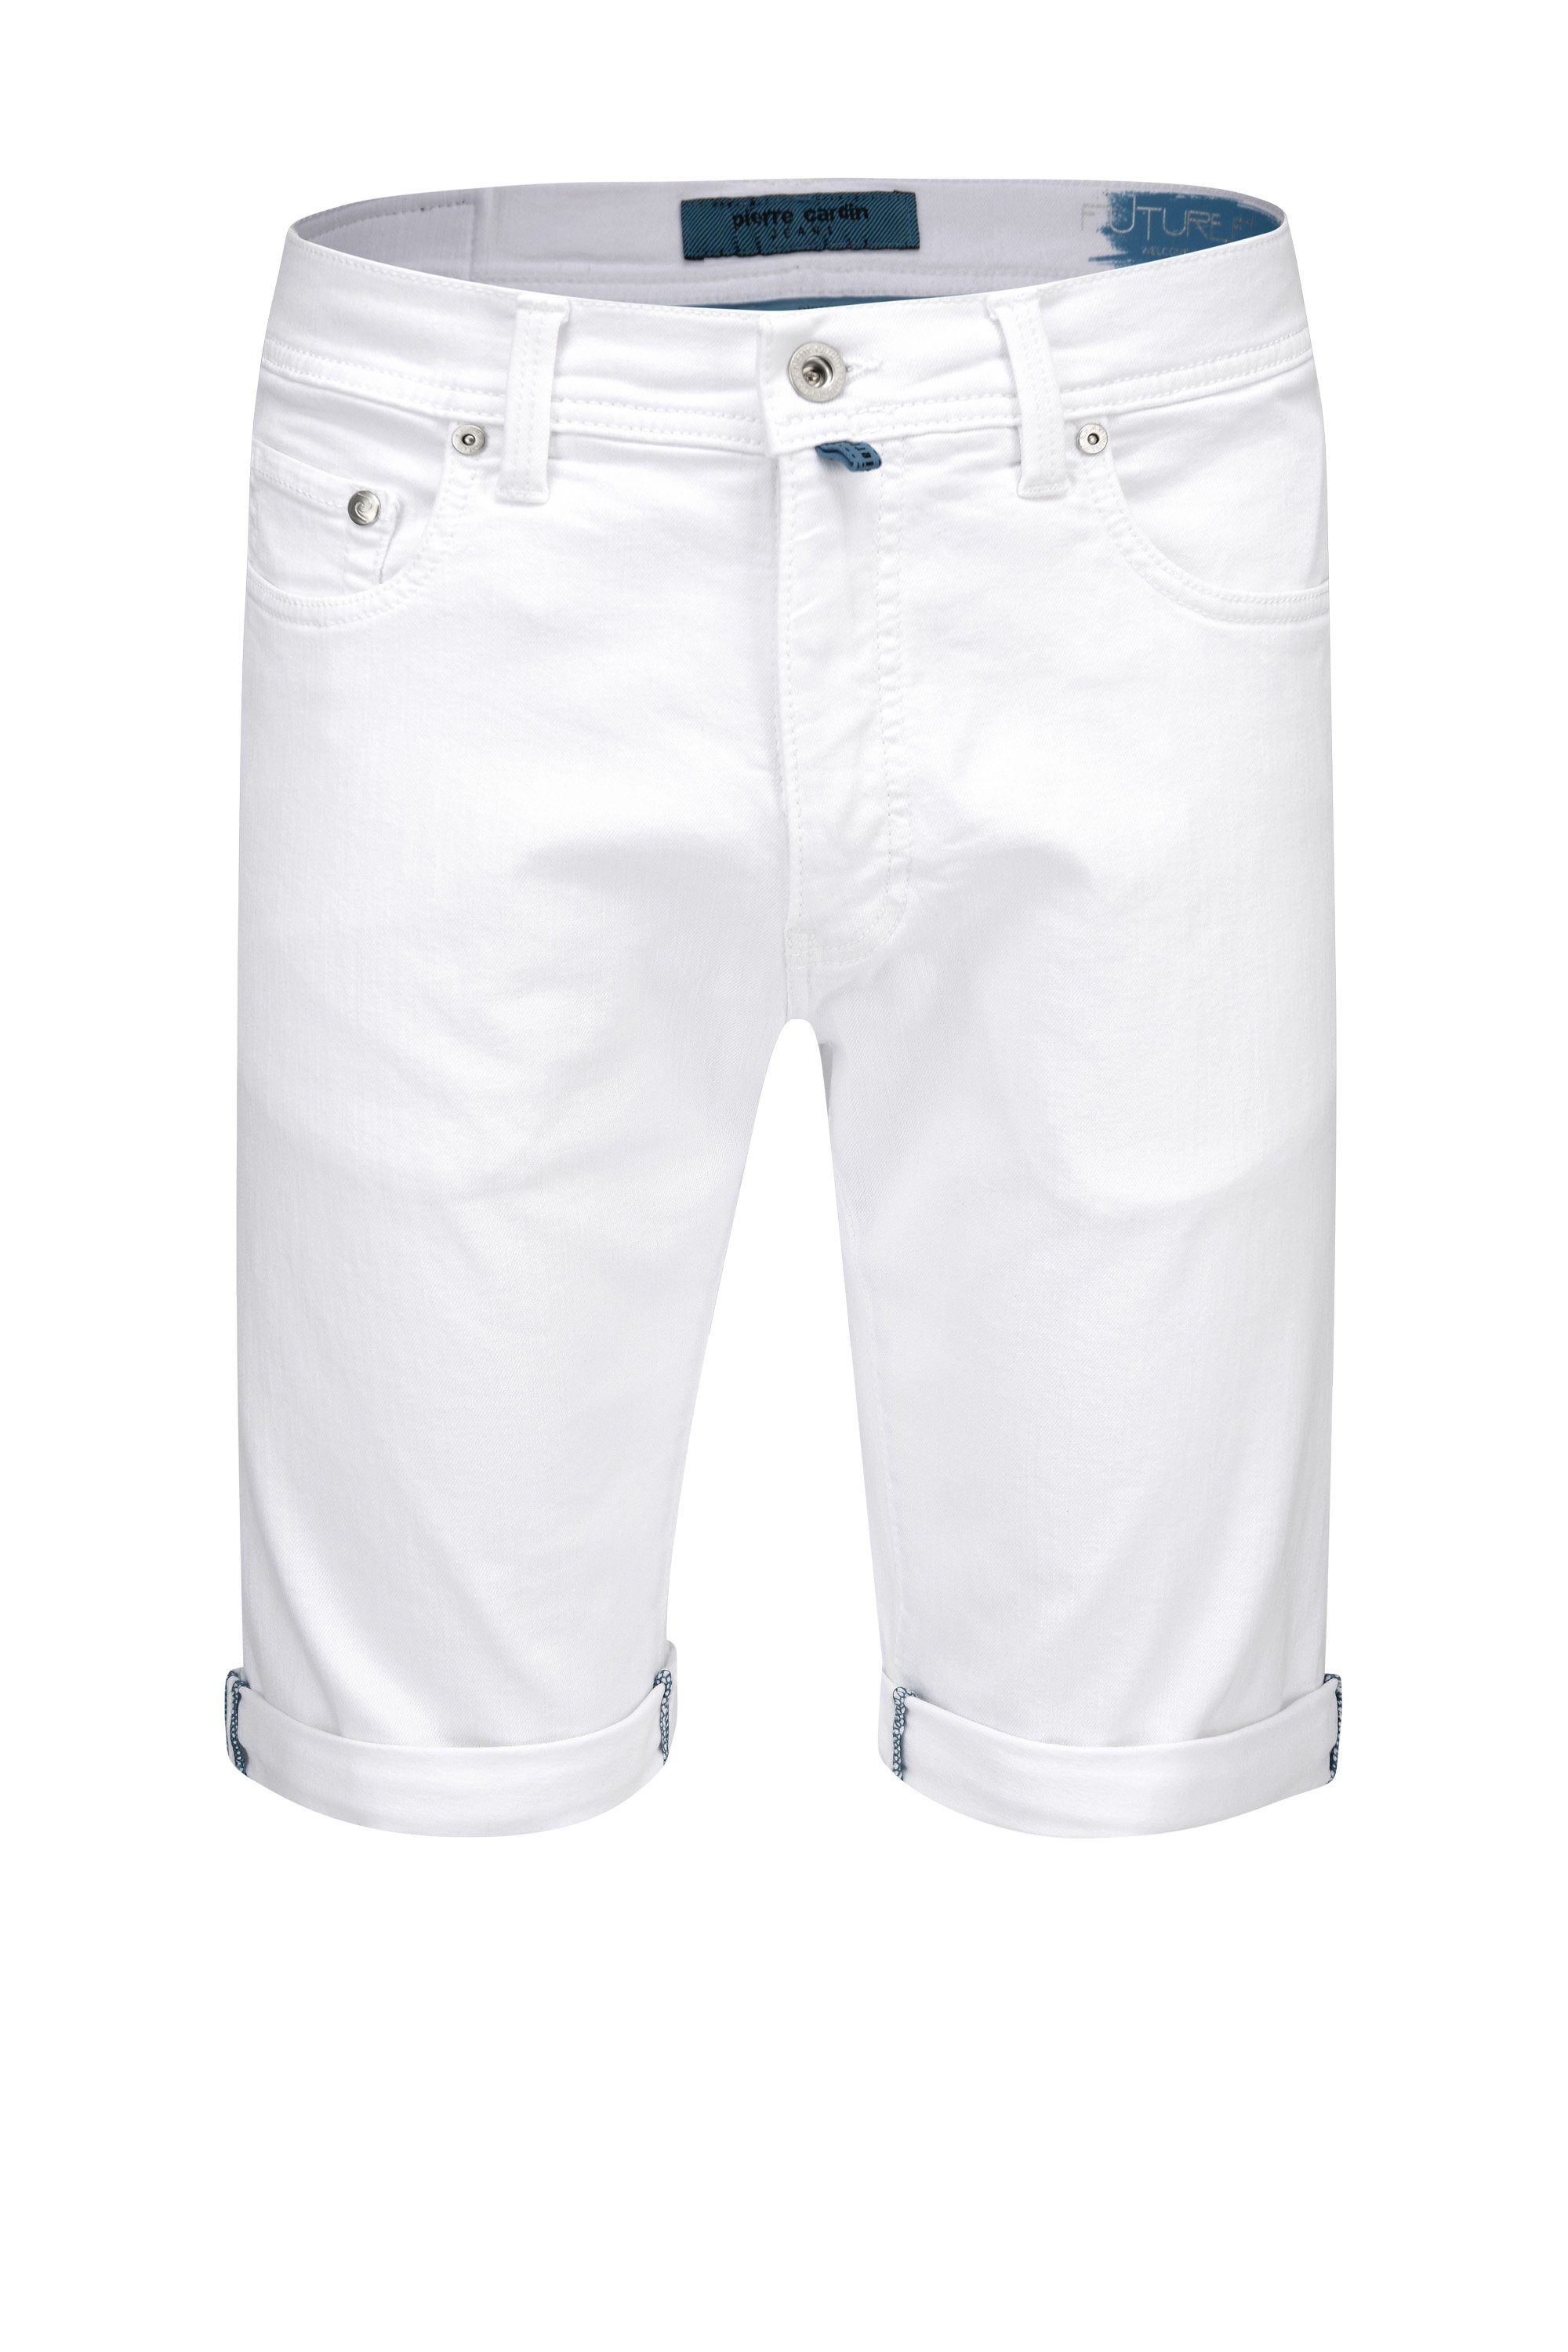 Pierre Cardin 5-Pocket-Jeans PIERRE CARDIN FUTUREFLEX SHORTS white 3452  8882.10